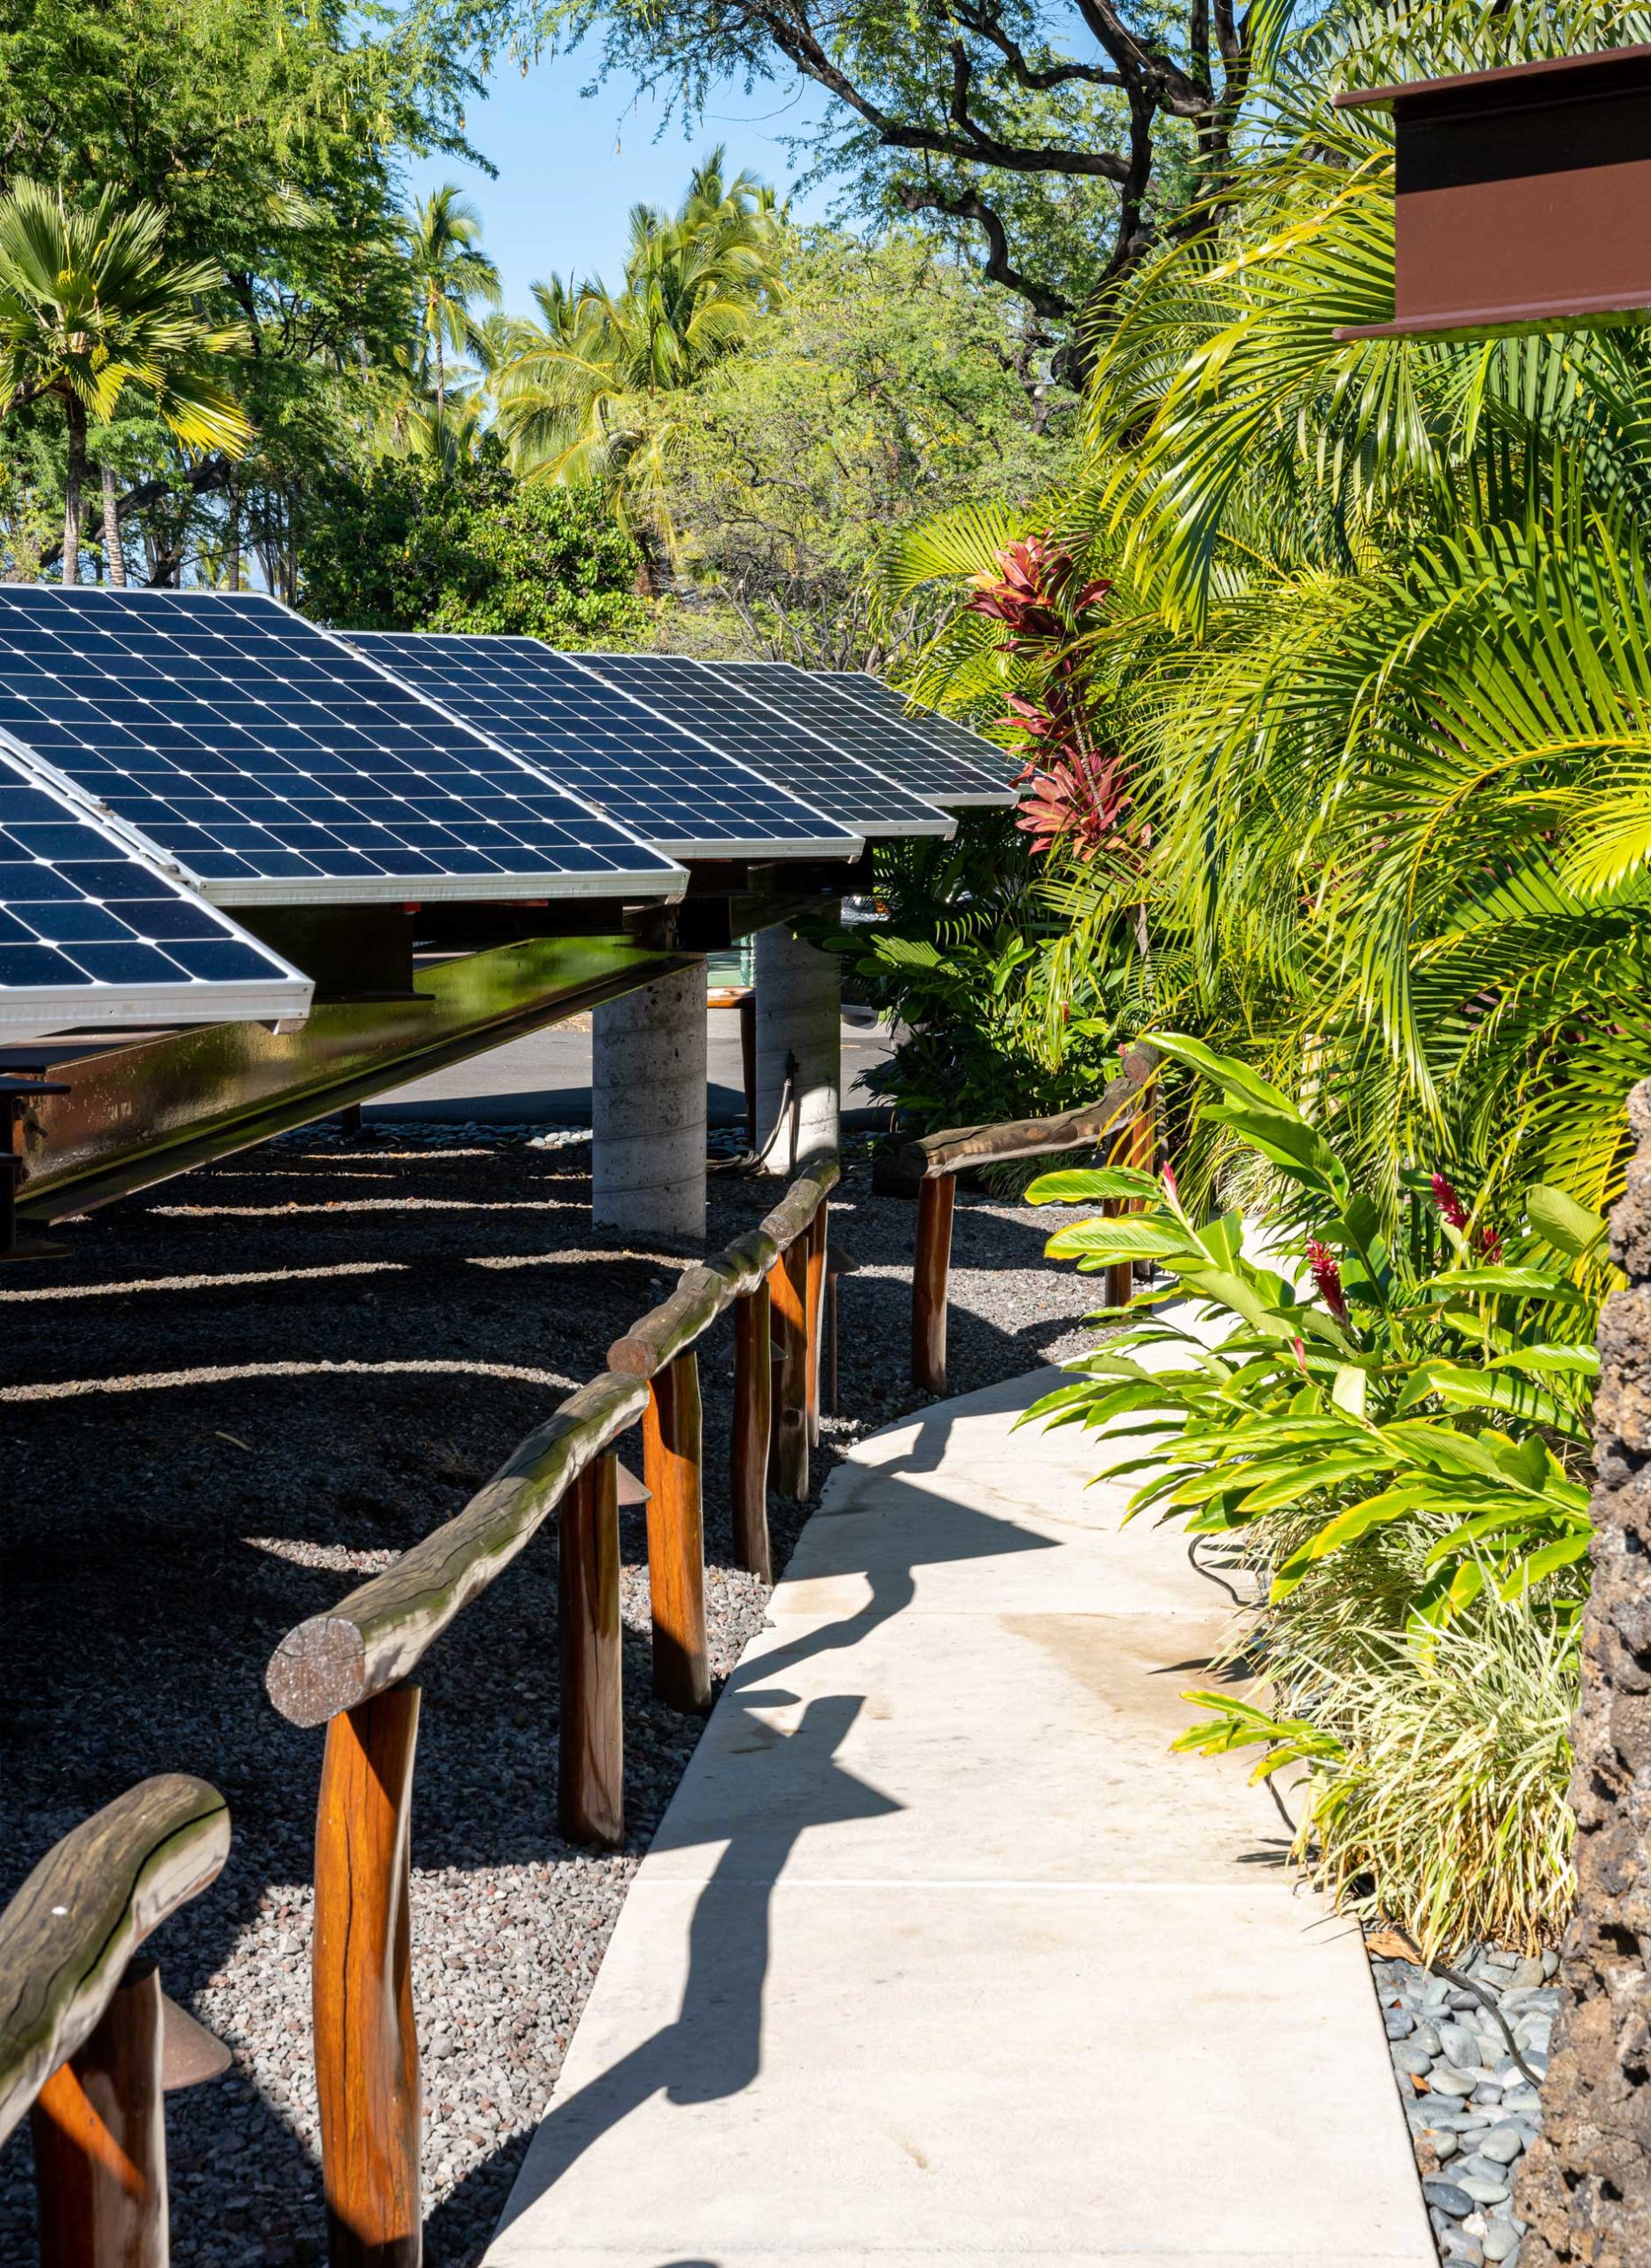 RES - Bakken Estate off-grid solar PV installation